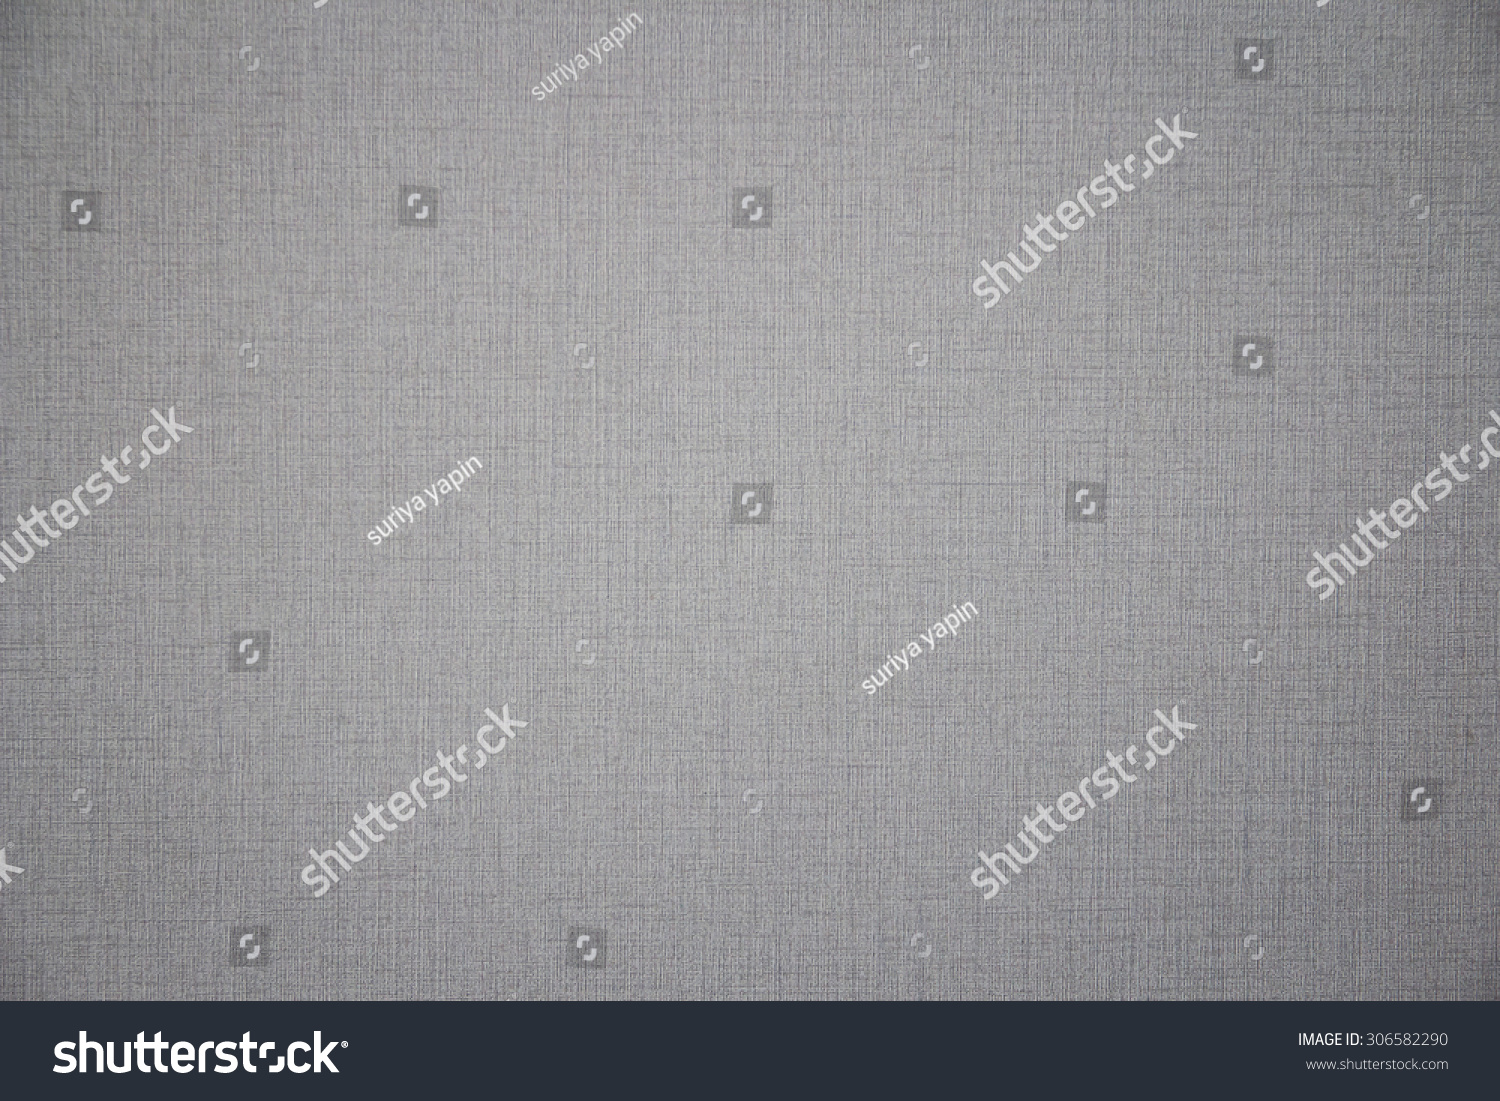 232,146 Linen grey texture Images, Stock Photos & Vectors | Shutterstock